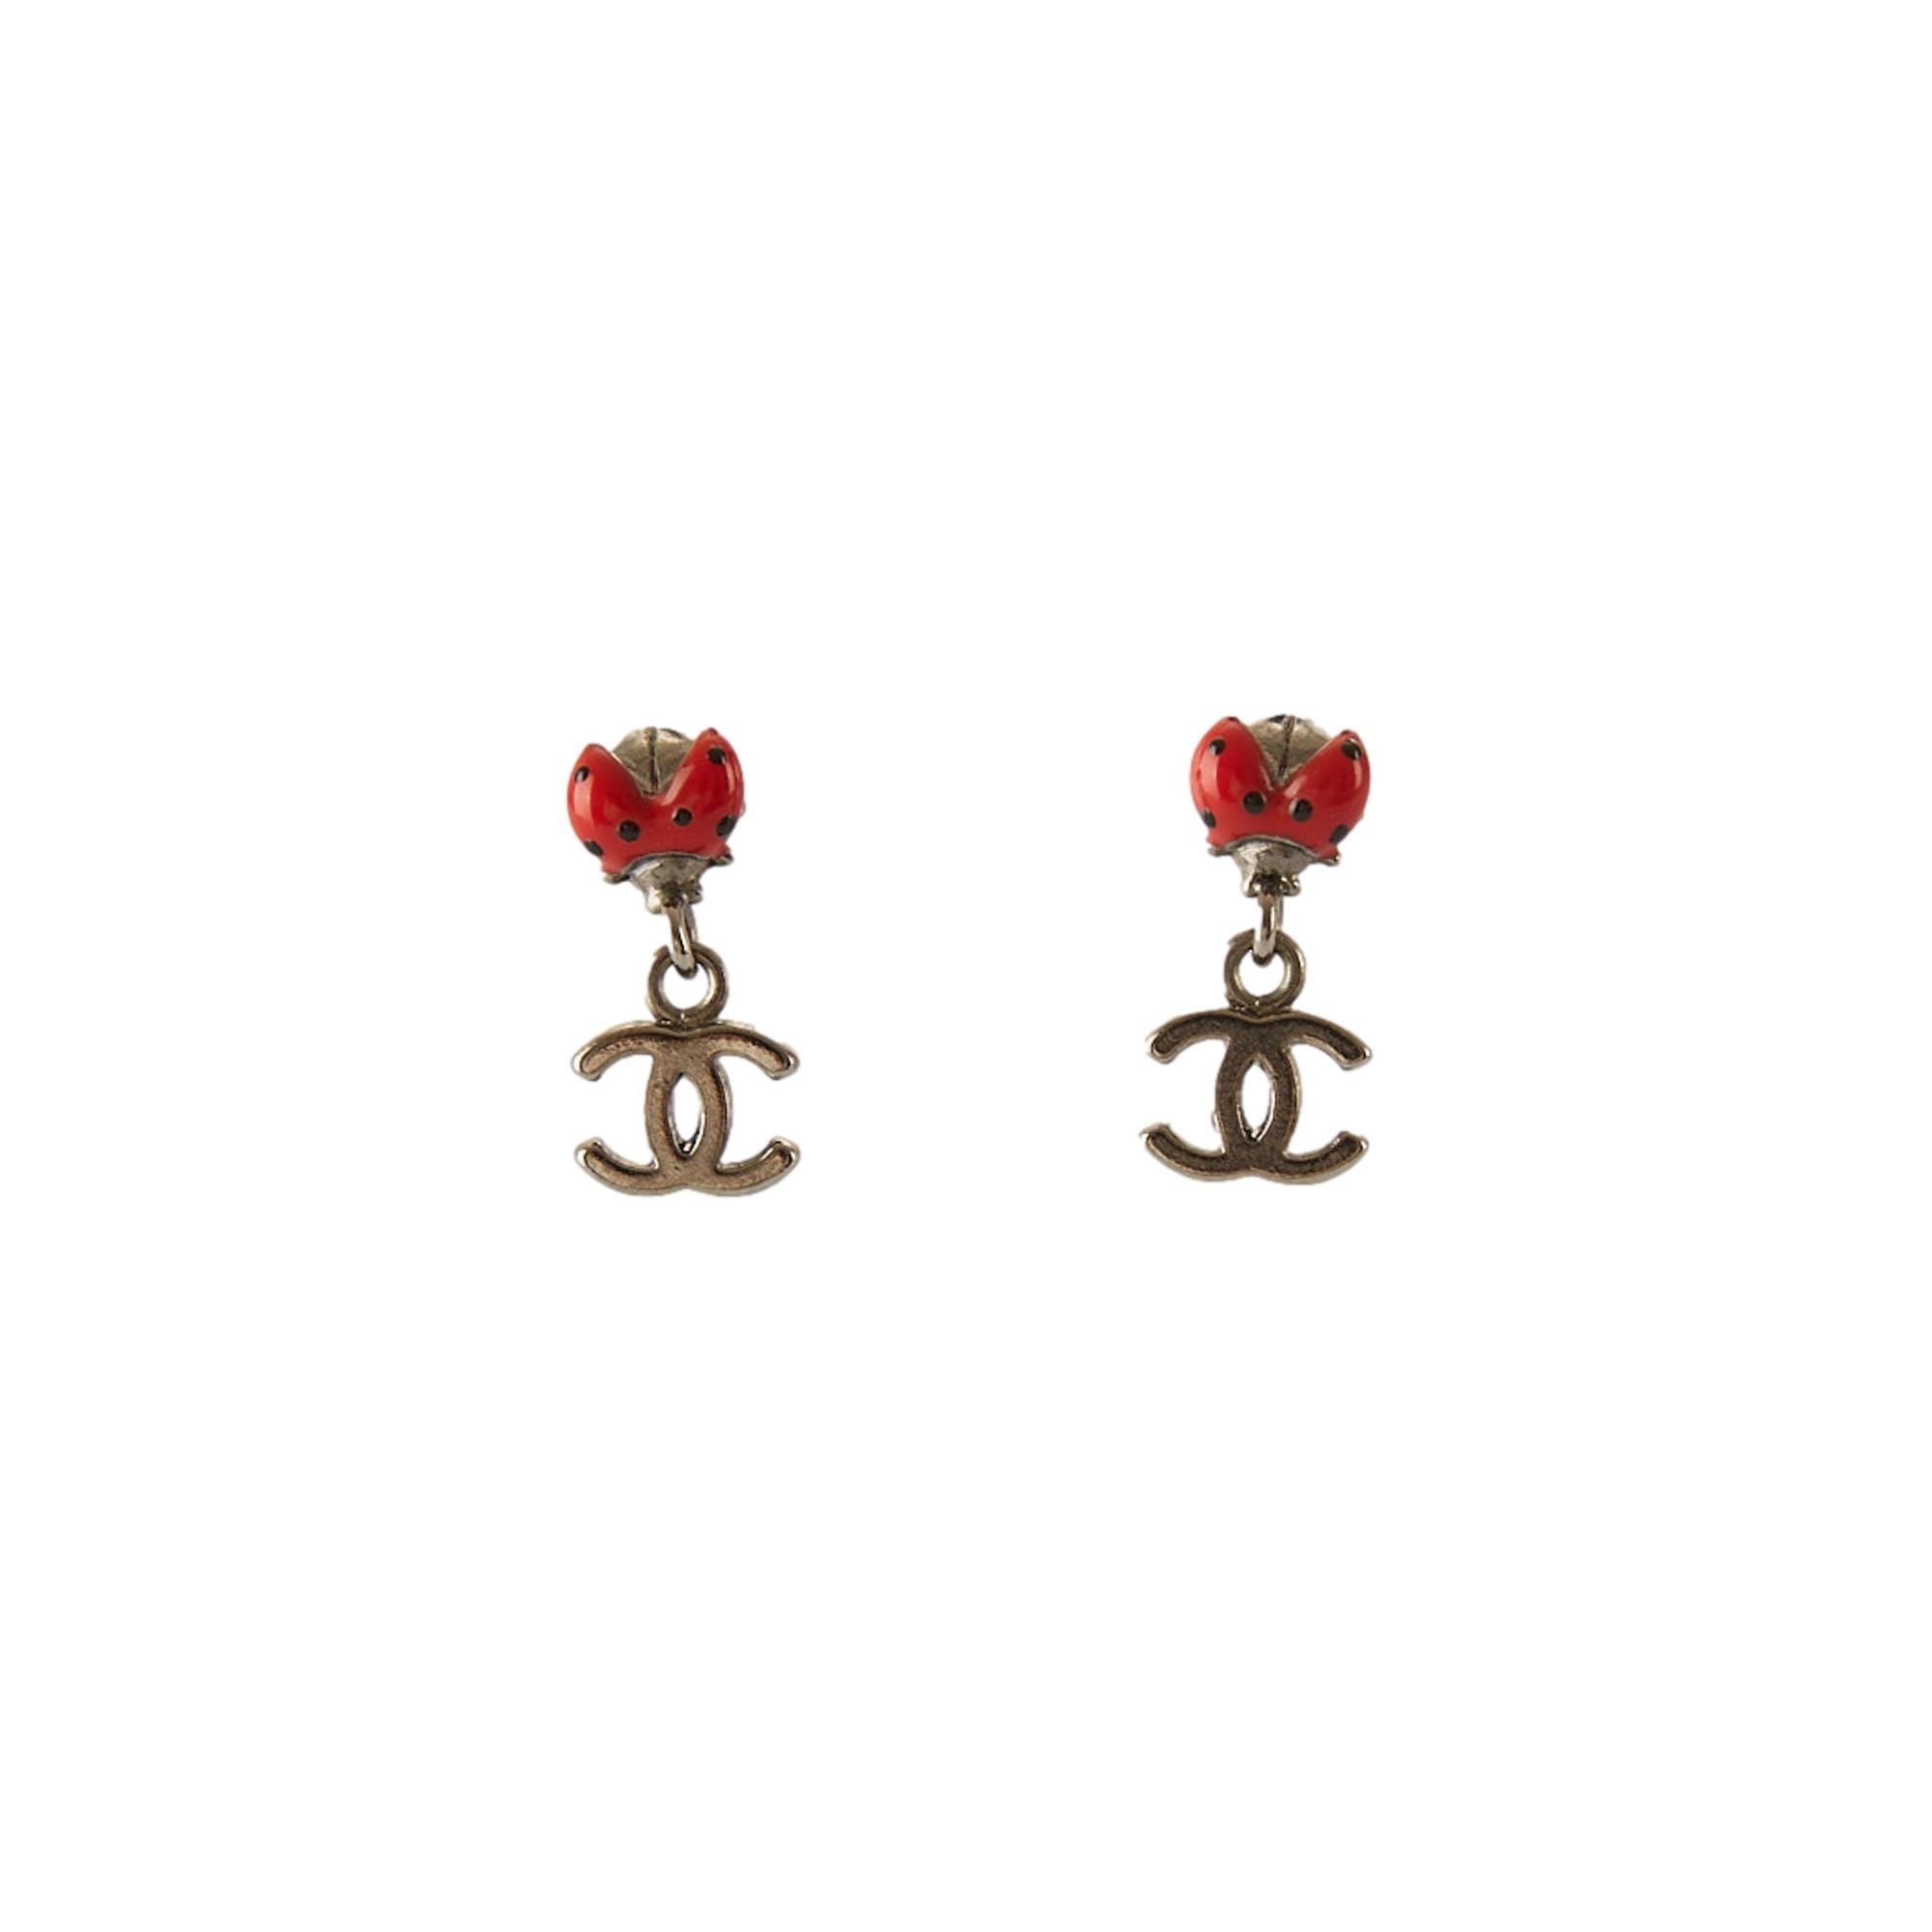 Chanel cc logo earrings - Gem